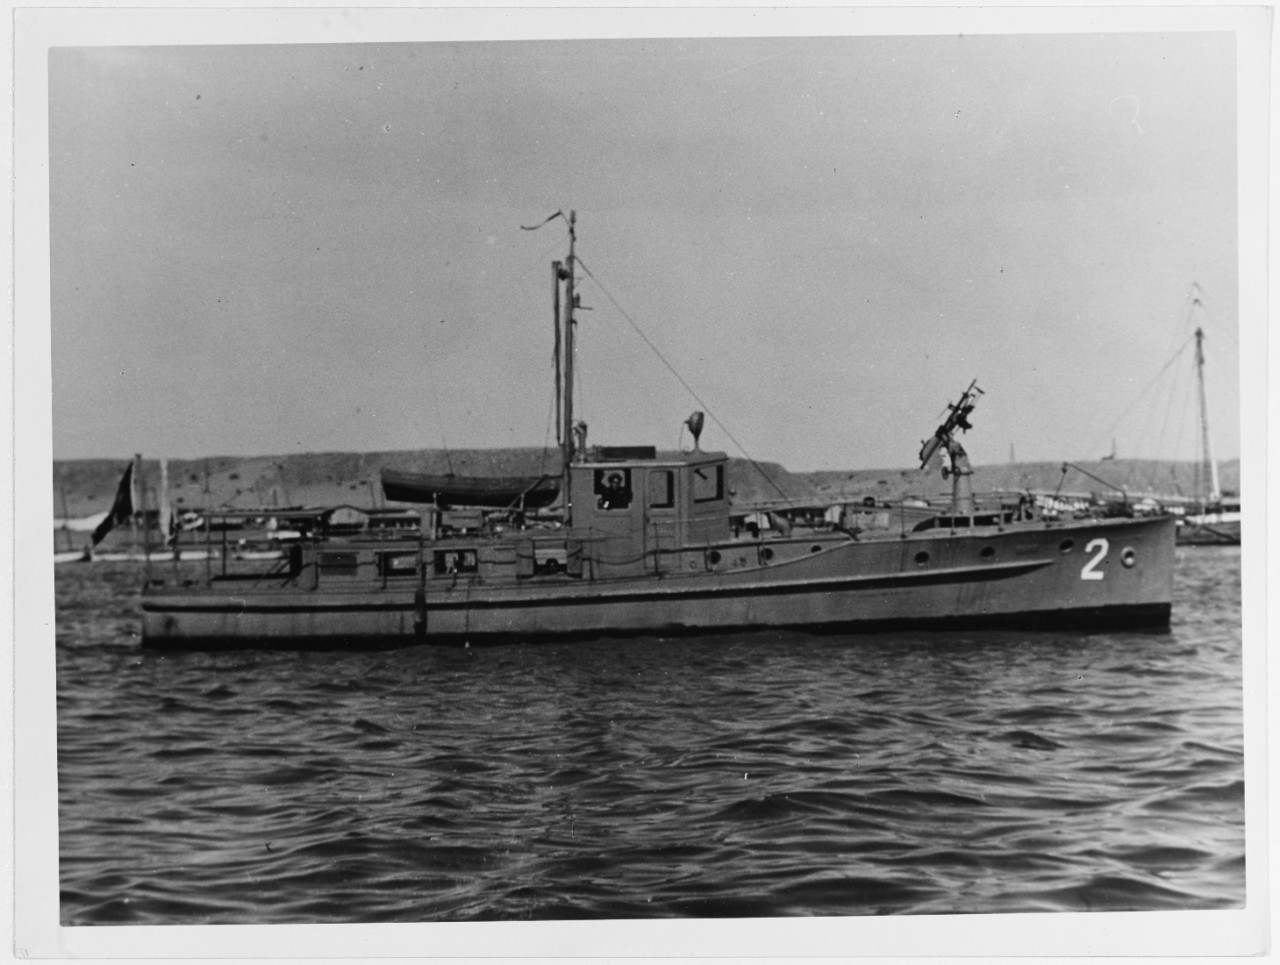 NH 45418 PATRULLERA No. 2 (Peruvian Naval Patrol Boat)